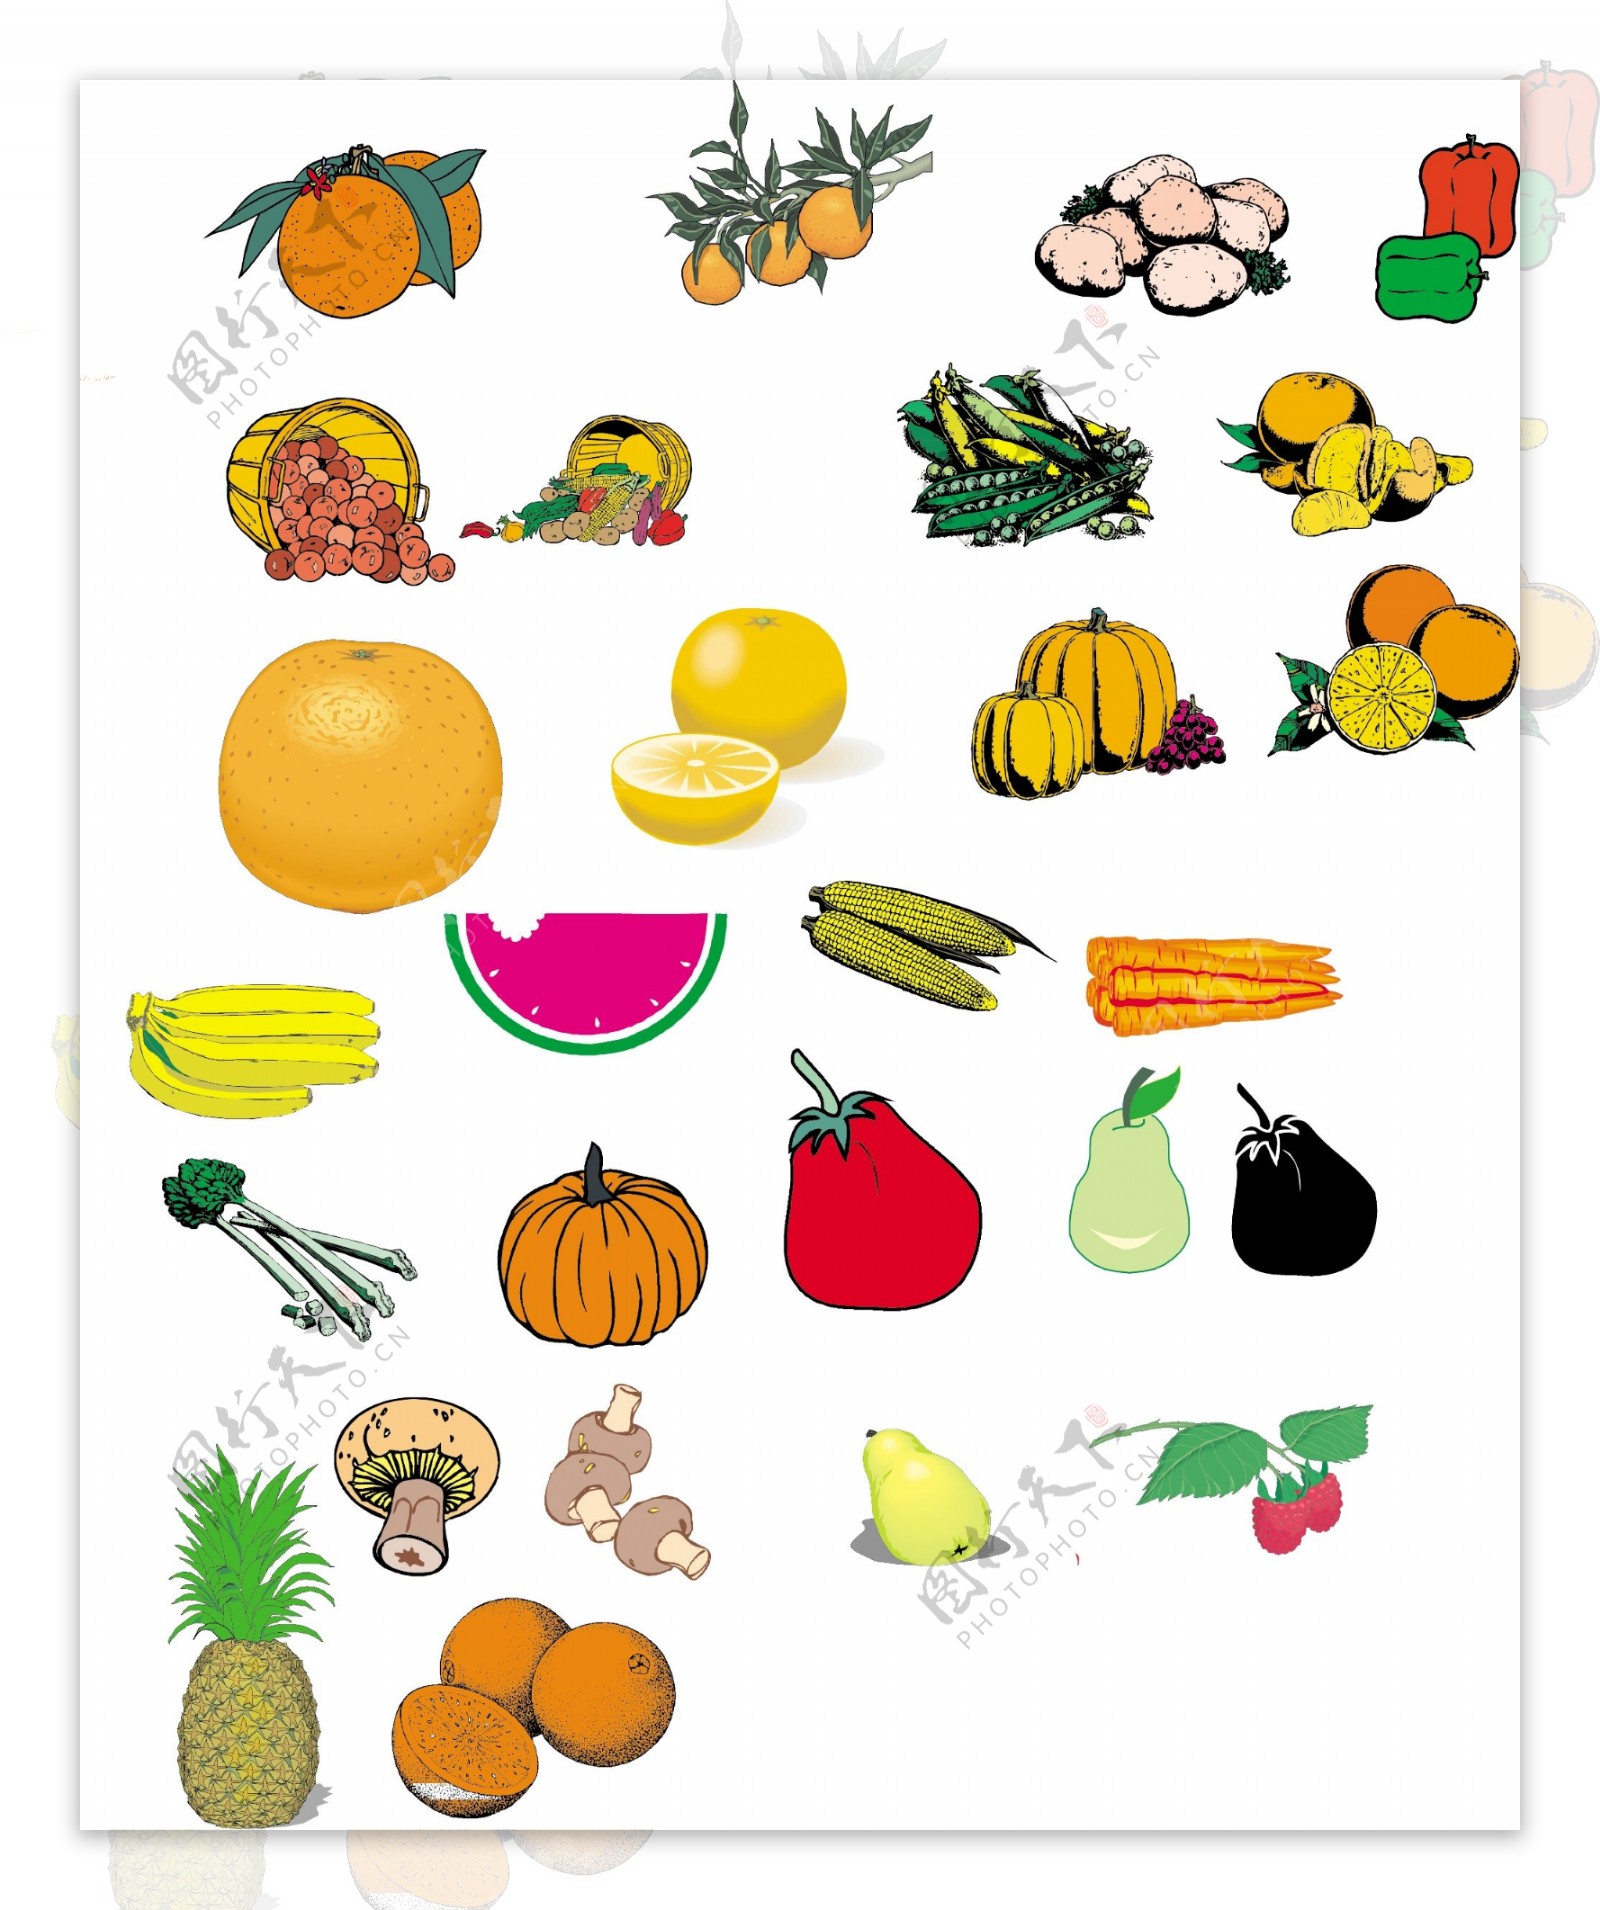 蔬菜水果4图片